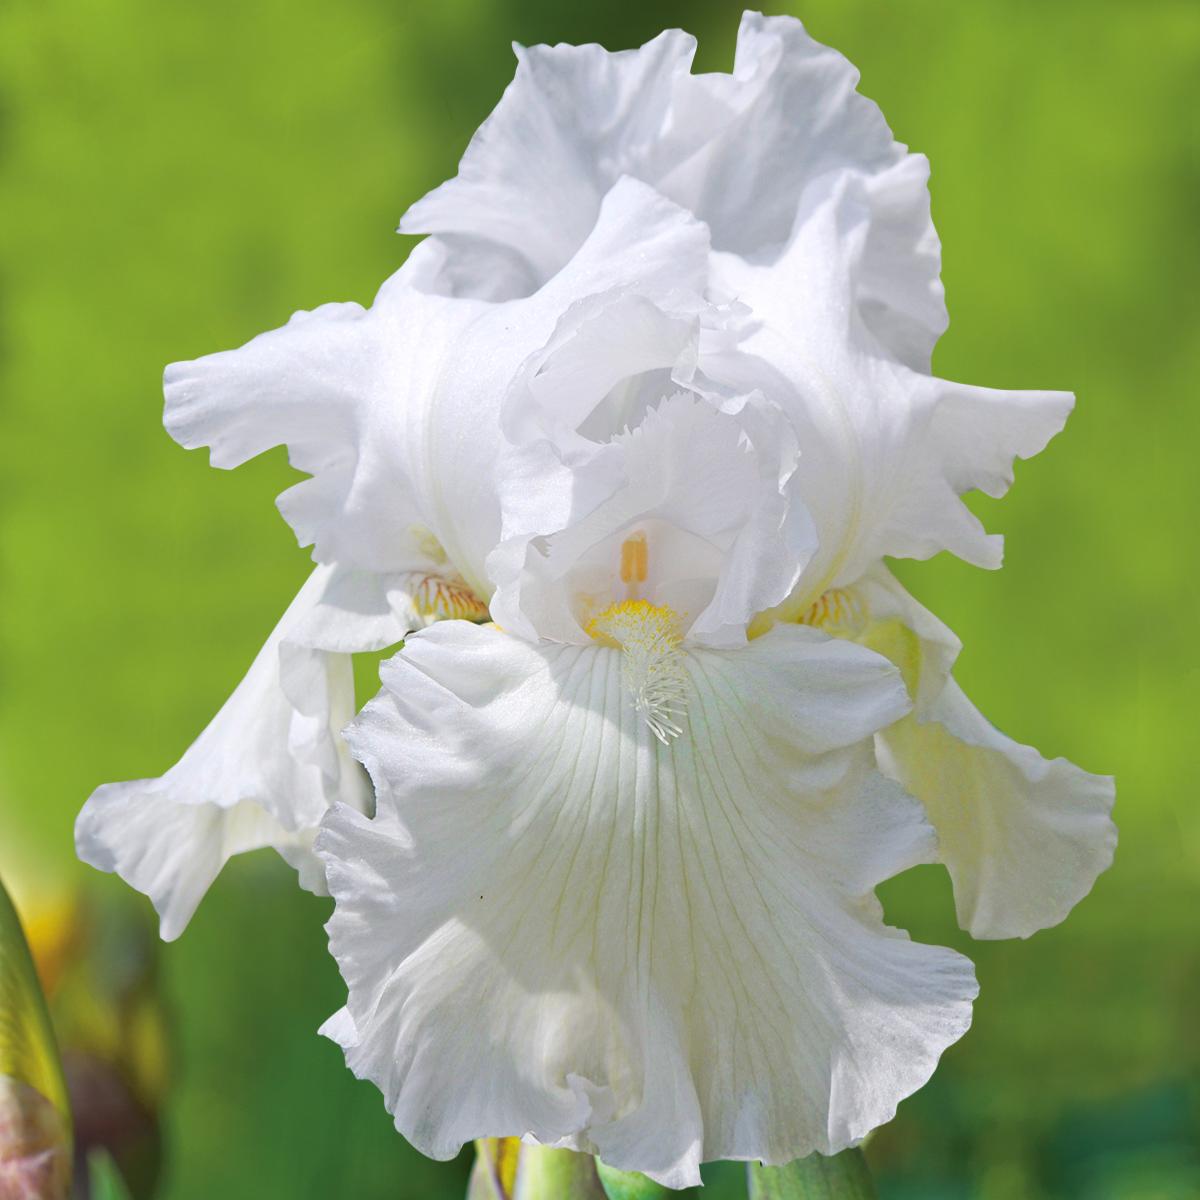 Iris des jardins wedding bouquet - le godet